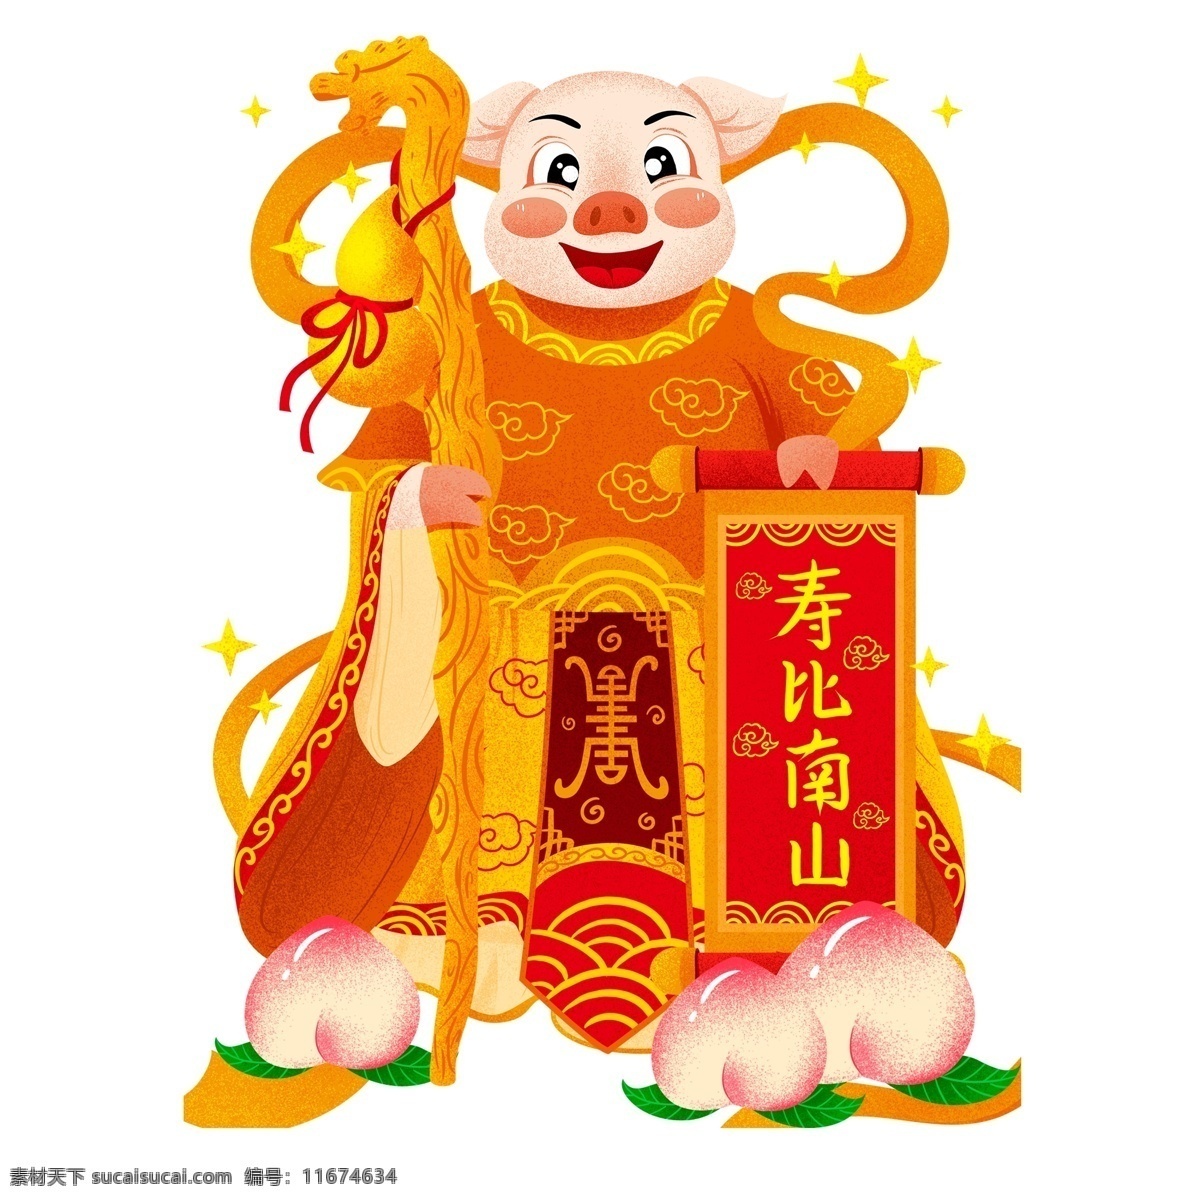 喜庆 寿比南山 财神 小 猪 中国风 春节 新春 插画 手绘 财神爷 寿桃 新年 猪年 2019年 小猪形象 猪年形象